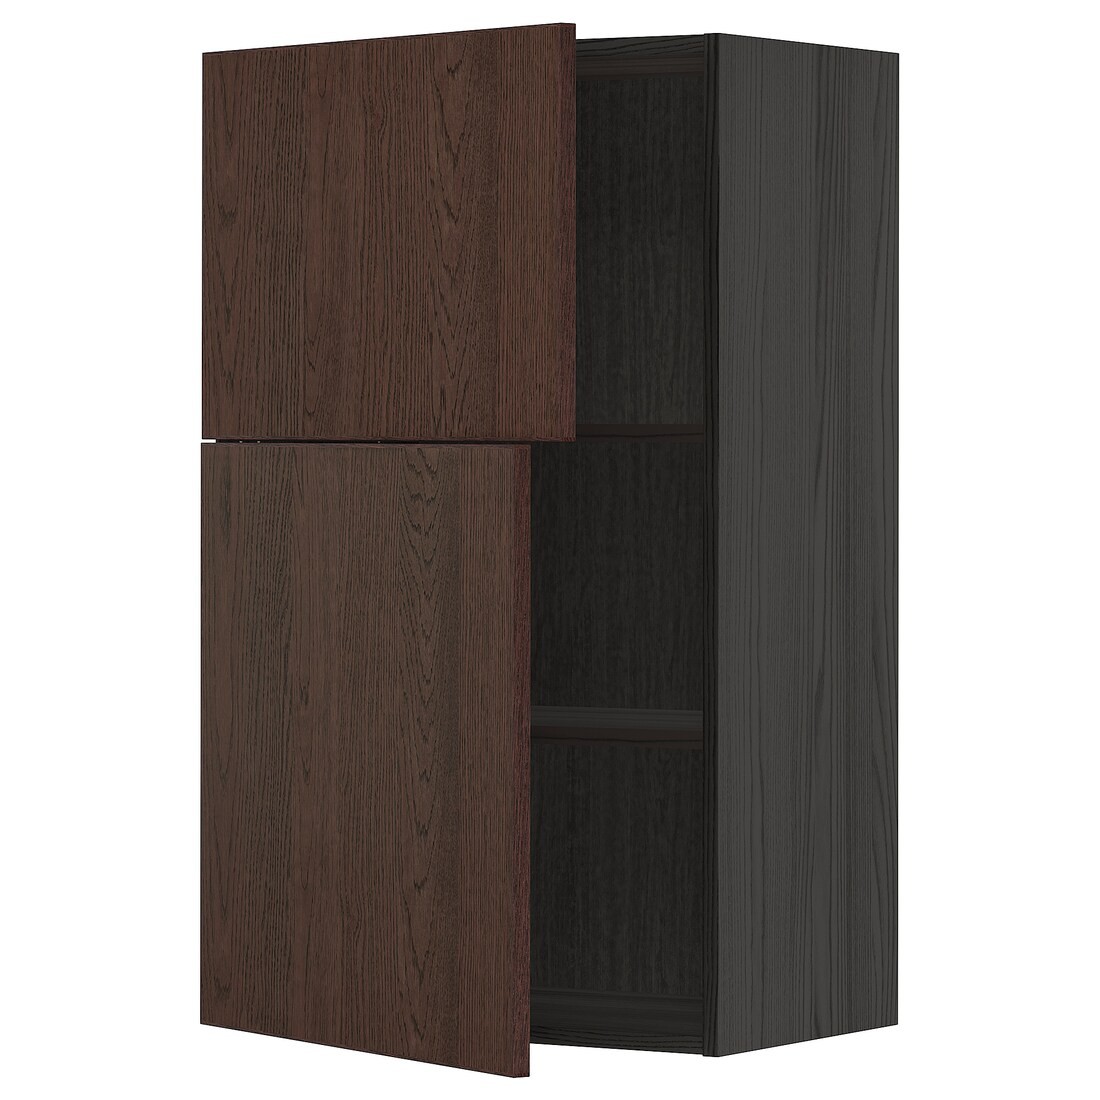 METOD МЕТОД Навесной шкаф с полками / 2 дверцы, черный / Sinarp коричневый, 60x100 см